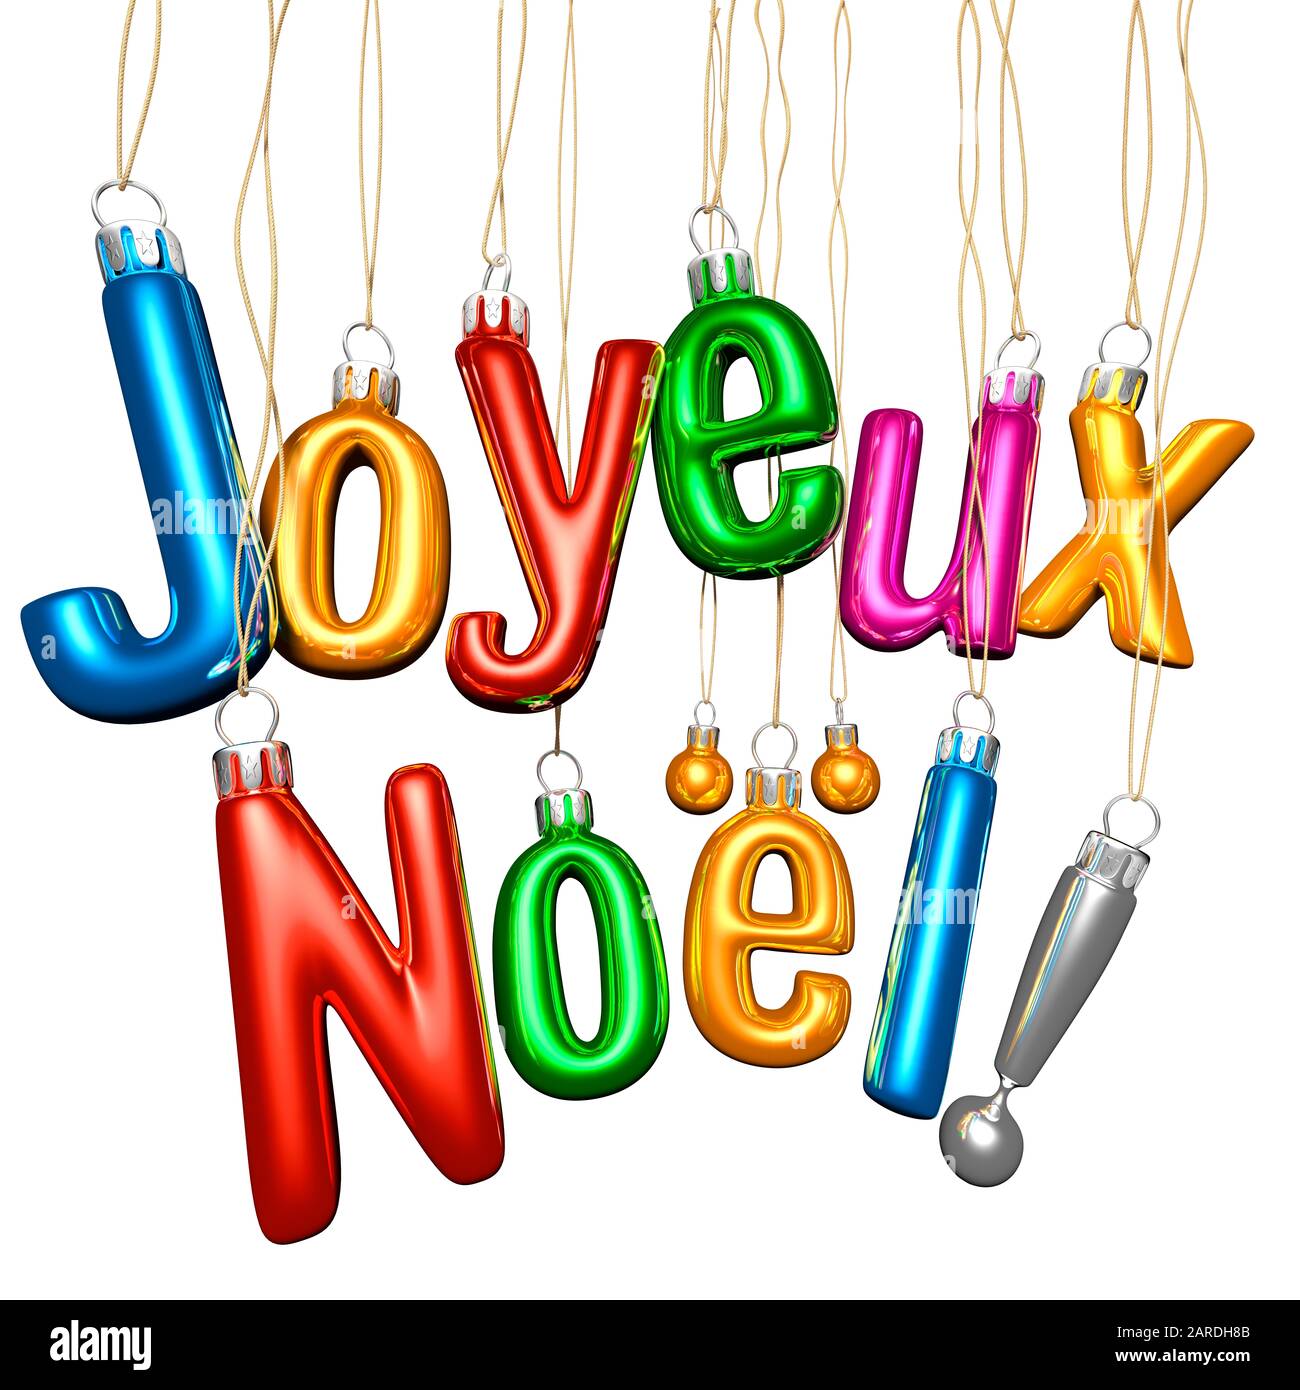 Joyeux Noel. Typographie De Noël. Boules de verre sur fond blanc. Message D'Accueil. Français Banque D'Images